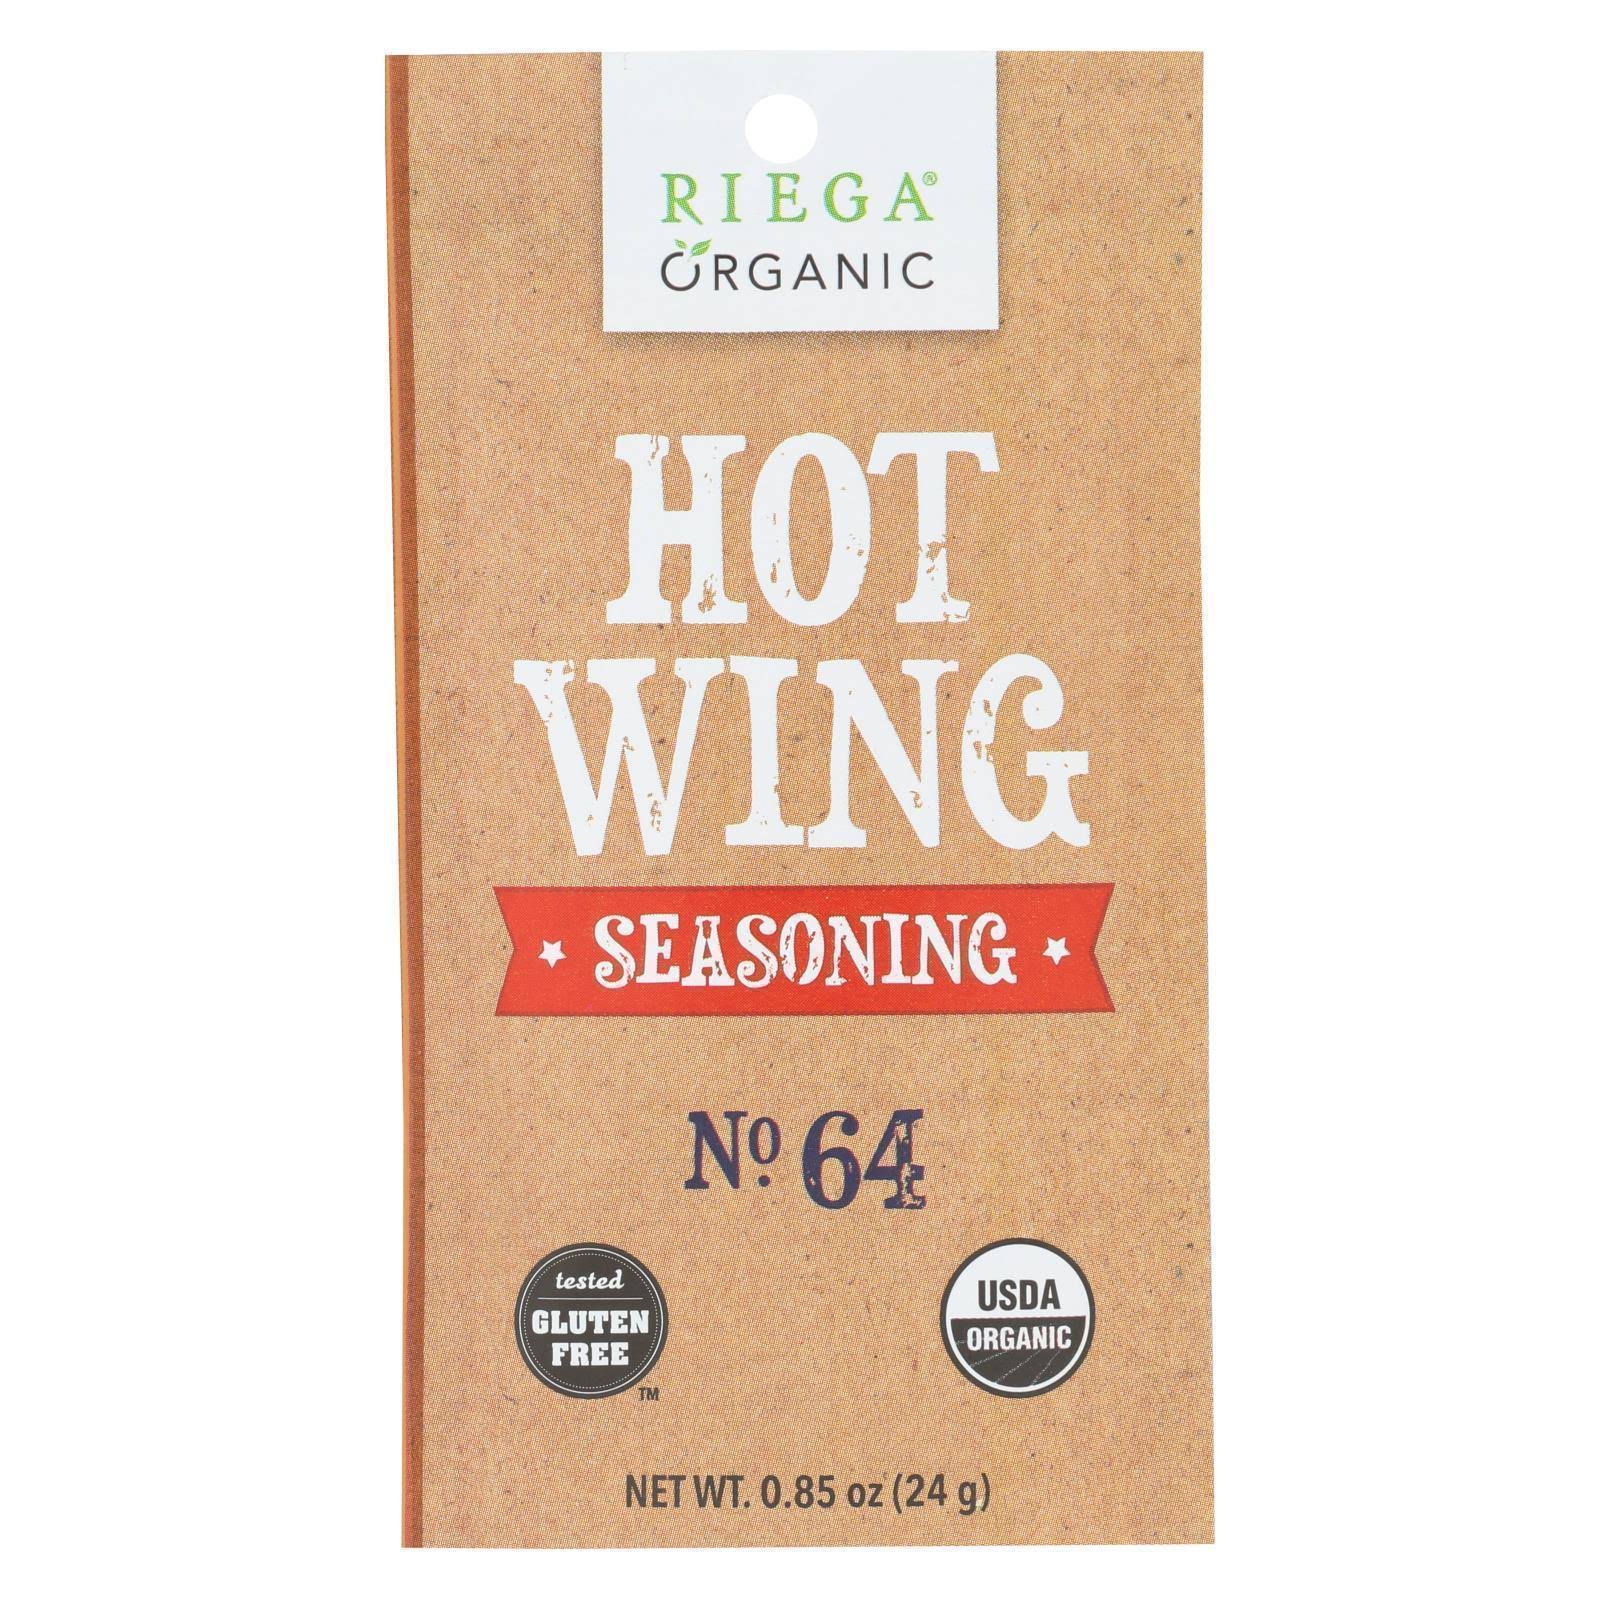 Riega Seasoning, Organic, Hot Wing - 0.85 oz